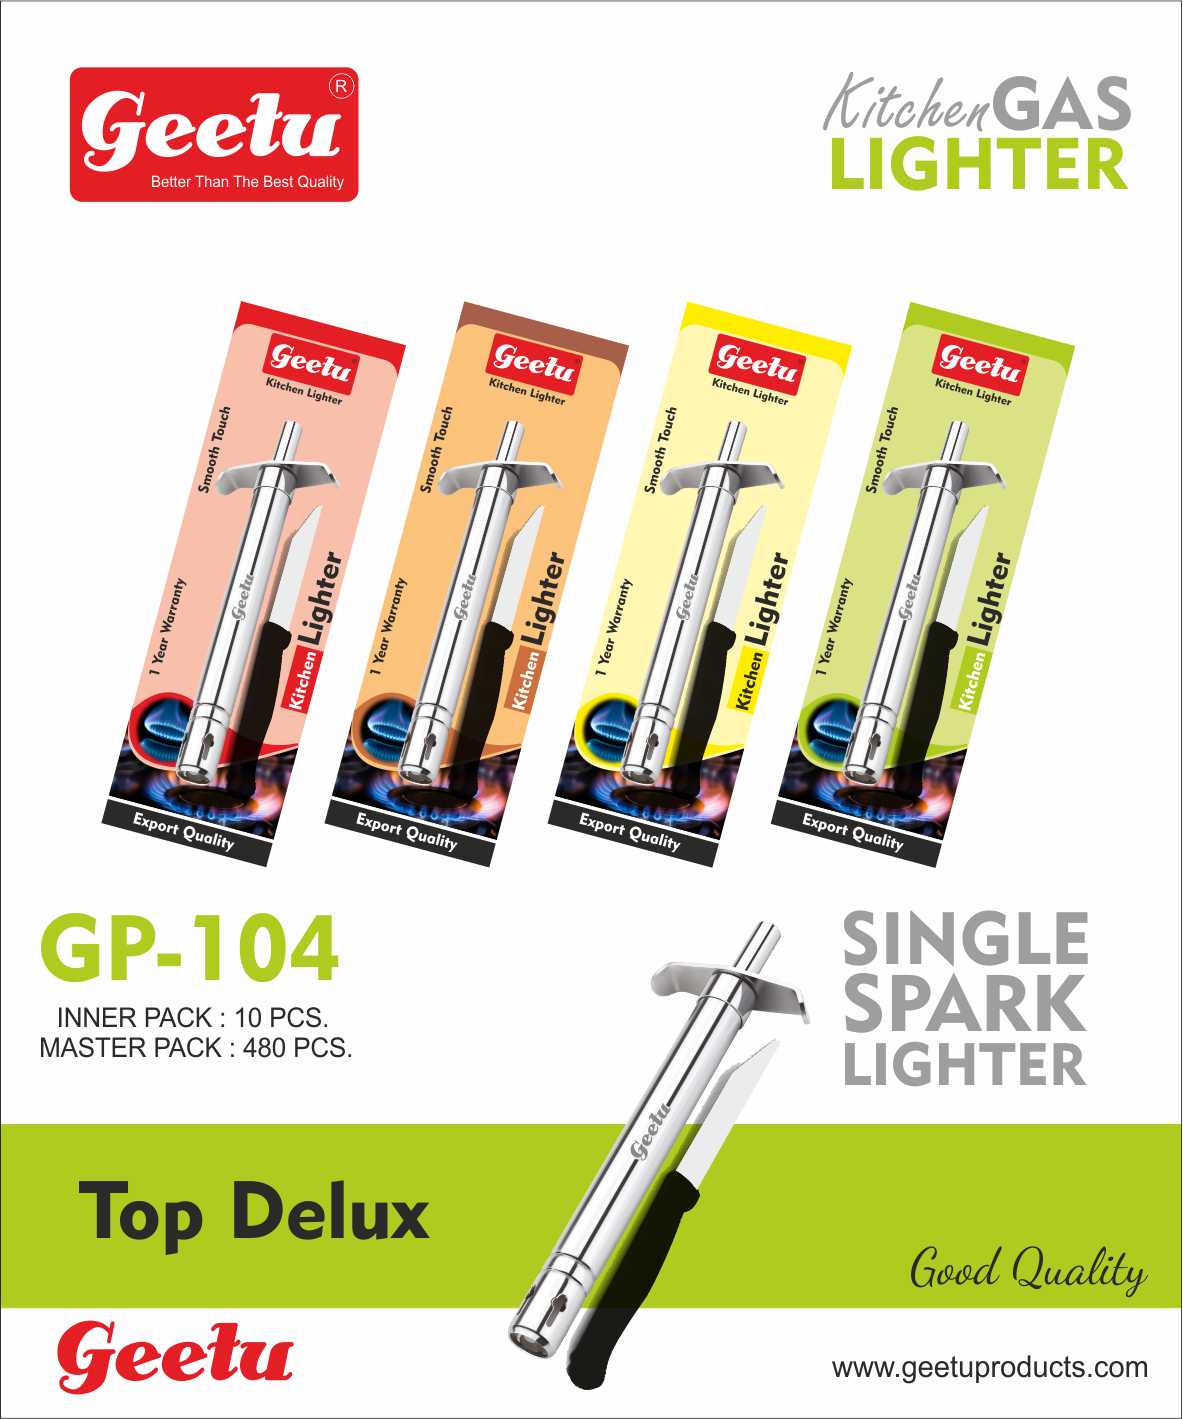 Top Delux Kitchen Gas Lighter